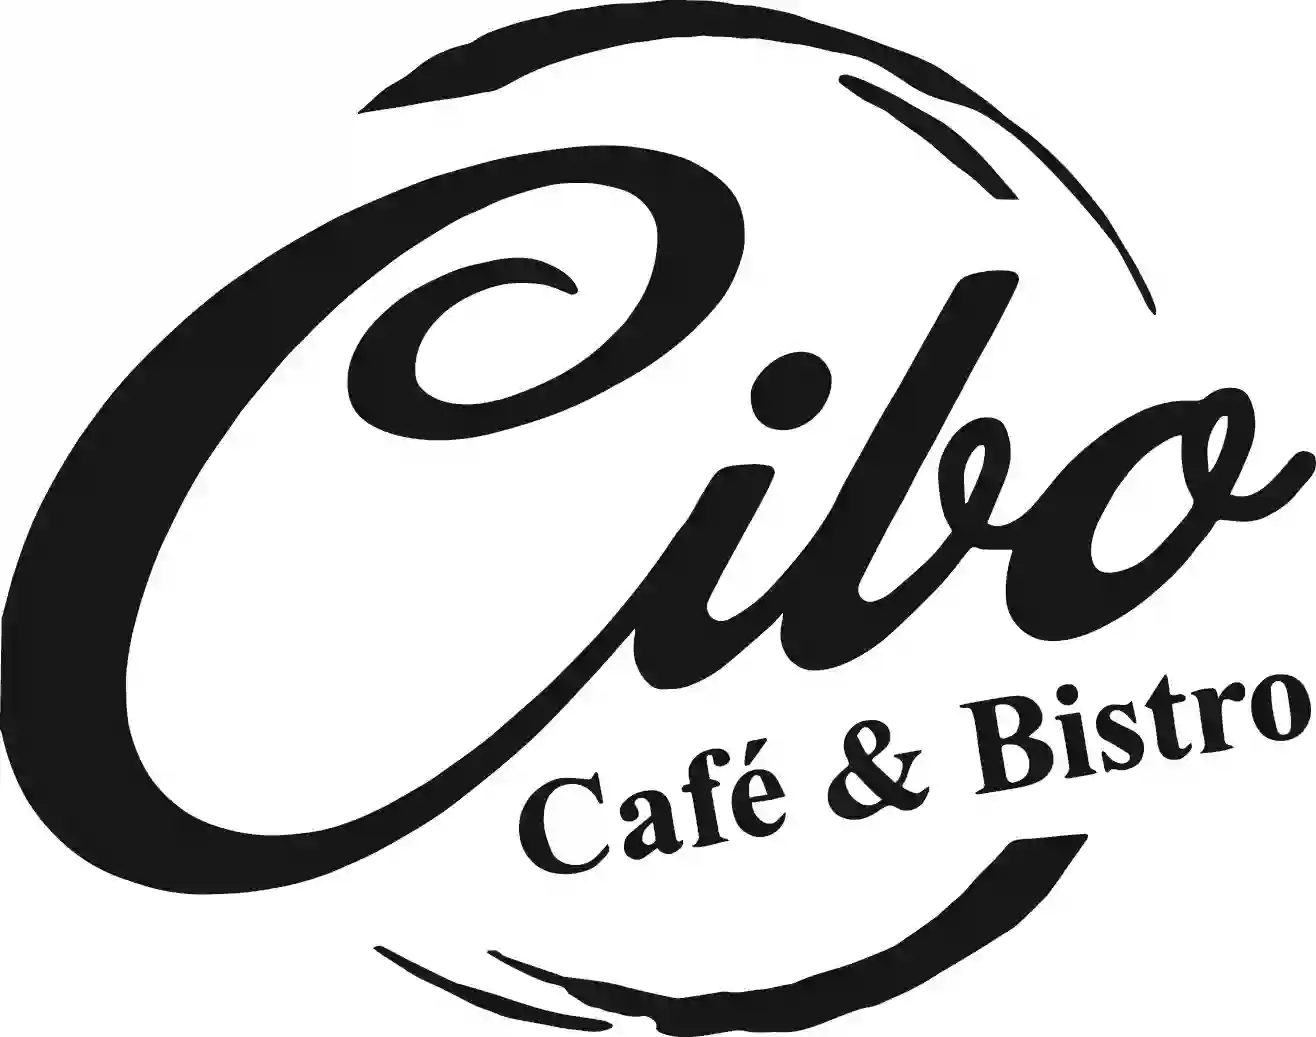 Cafe Cibo